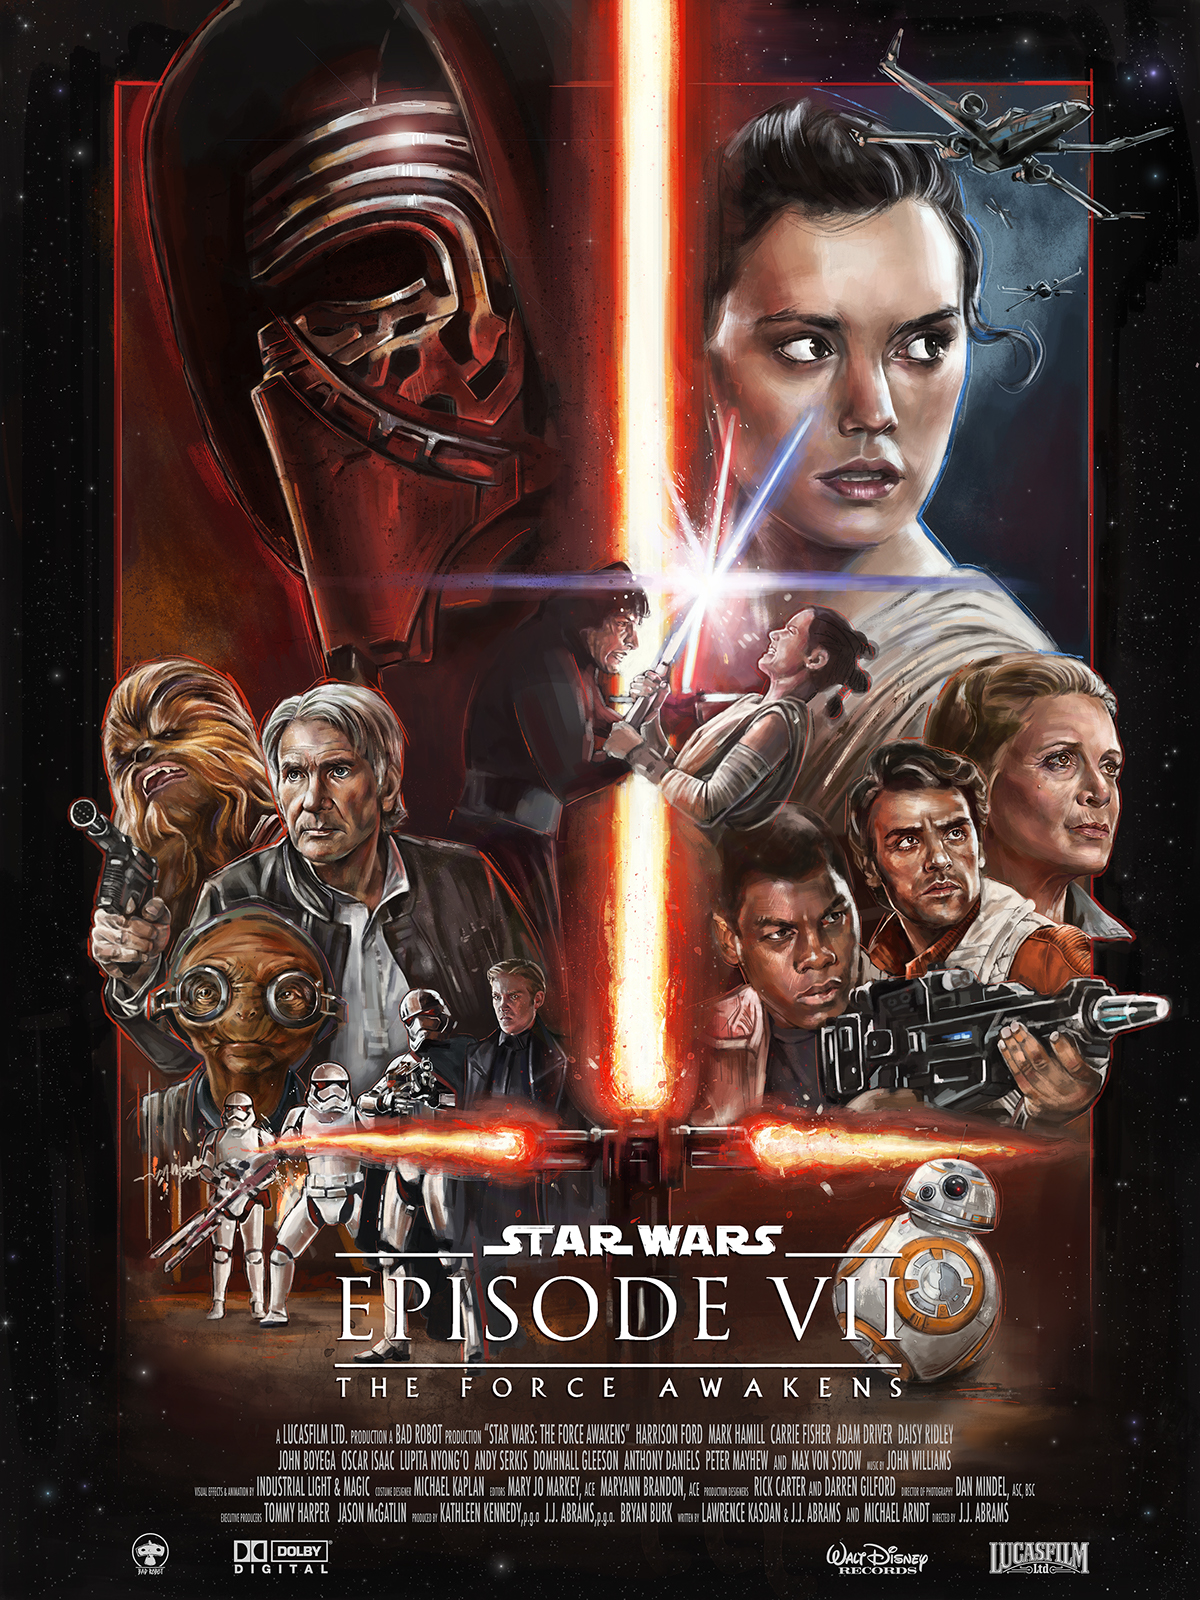 Star Wars: The Force Awakens - Alternative Film Poster on Behance